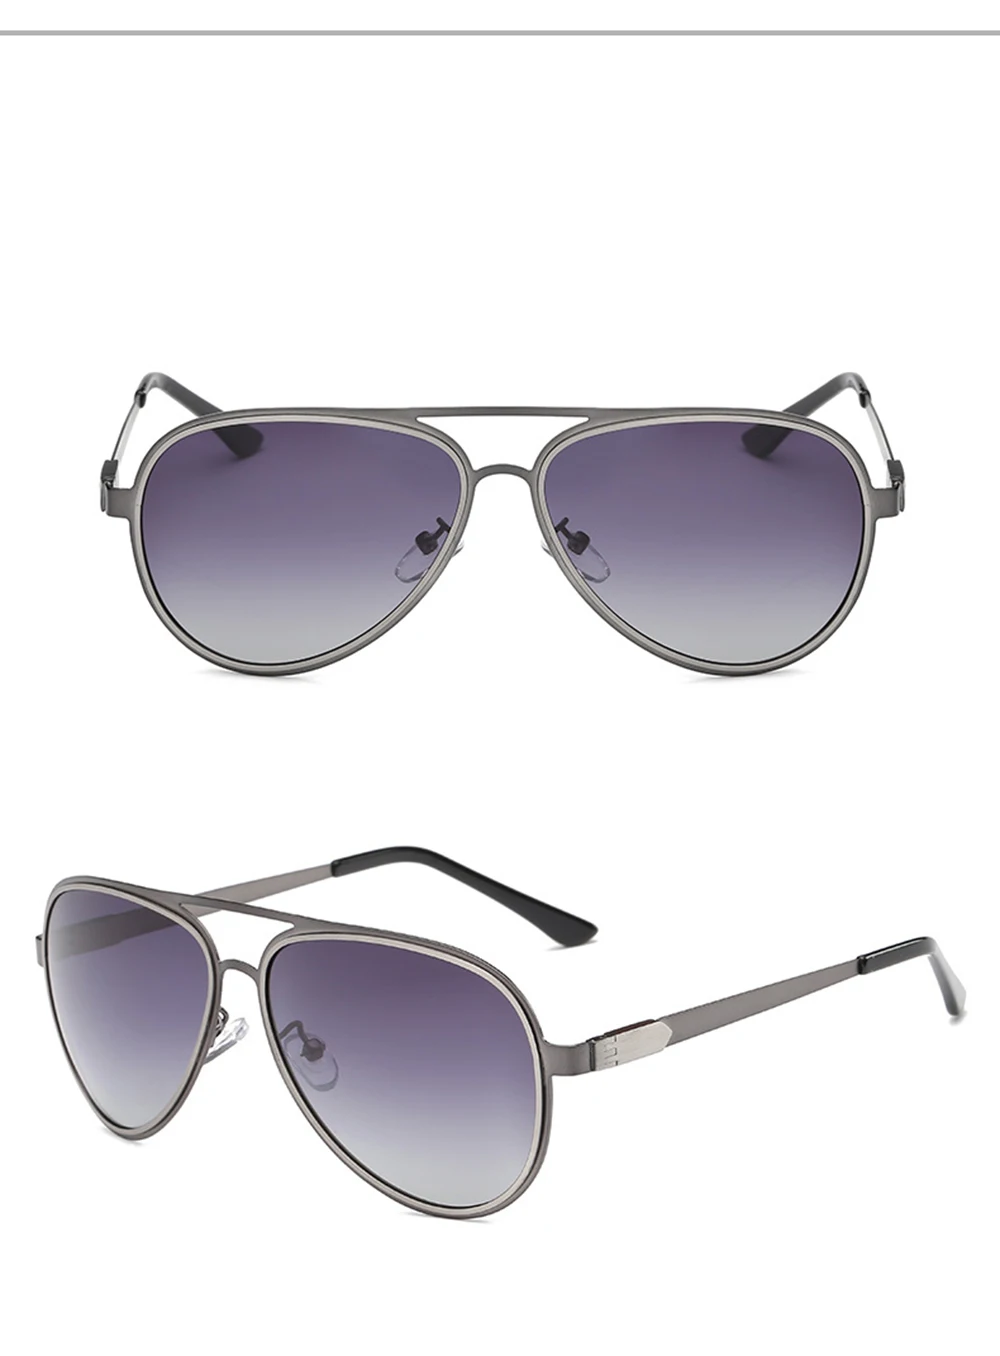 RMM 2018 новые мужские солнцезащитные очки поляризованные линзы обувь для мужчин и женщин лягушка очки ретро отражающие солнцезащитные очки